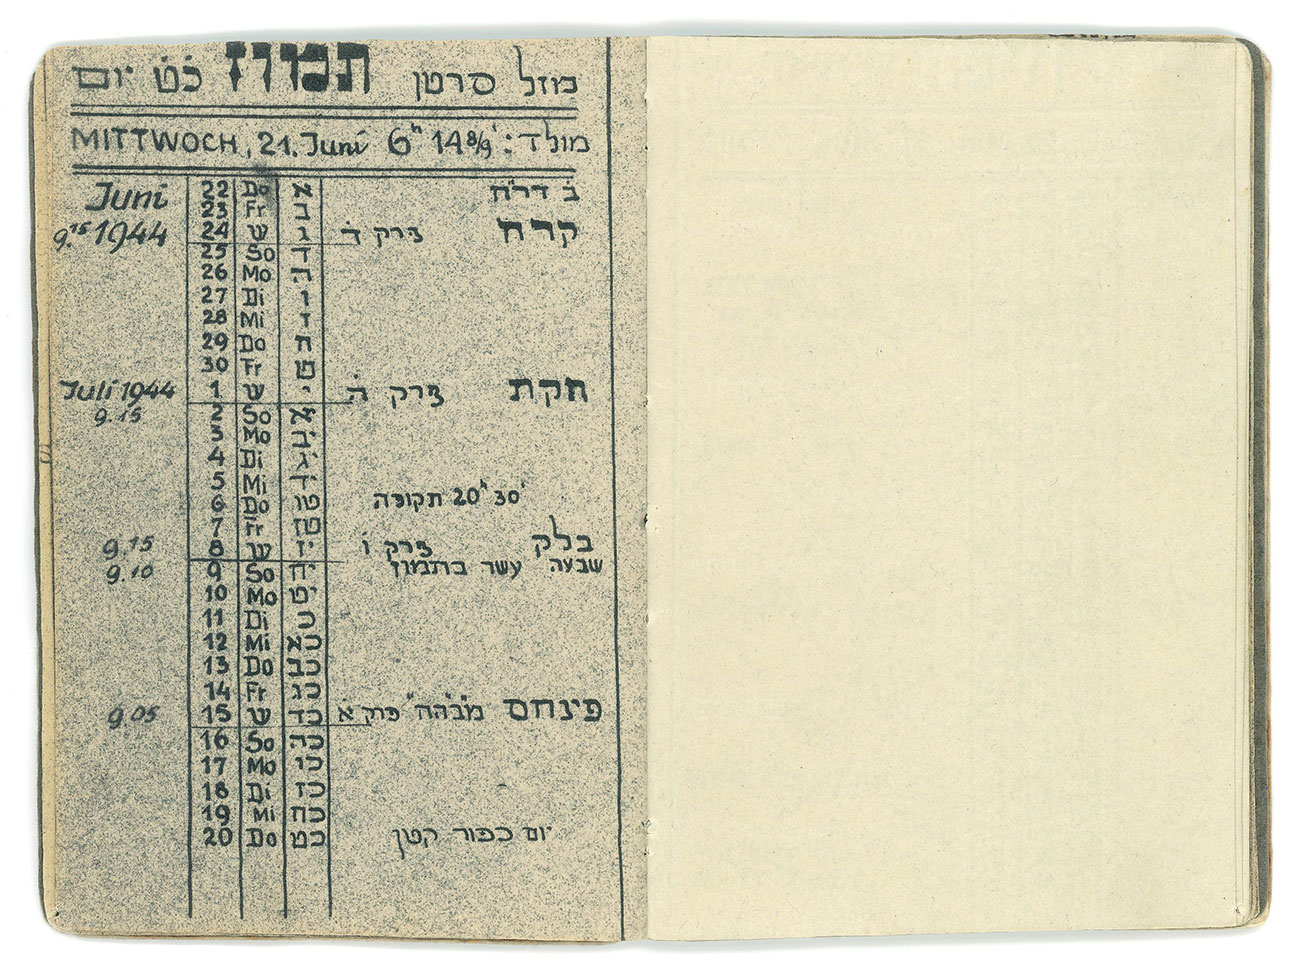 Calendrier de l'année juive 5704 (1943-44) réalisé et reproduit par Asher Berlinger à Theresienstadt